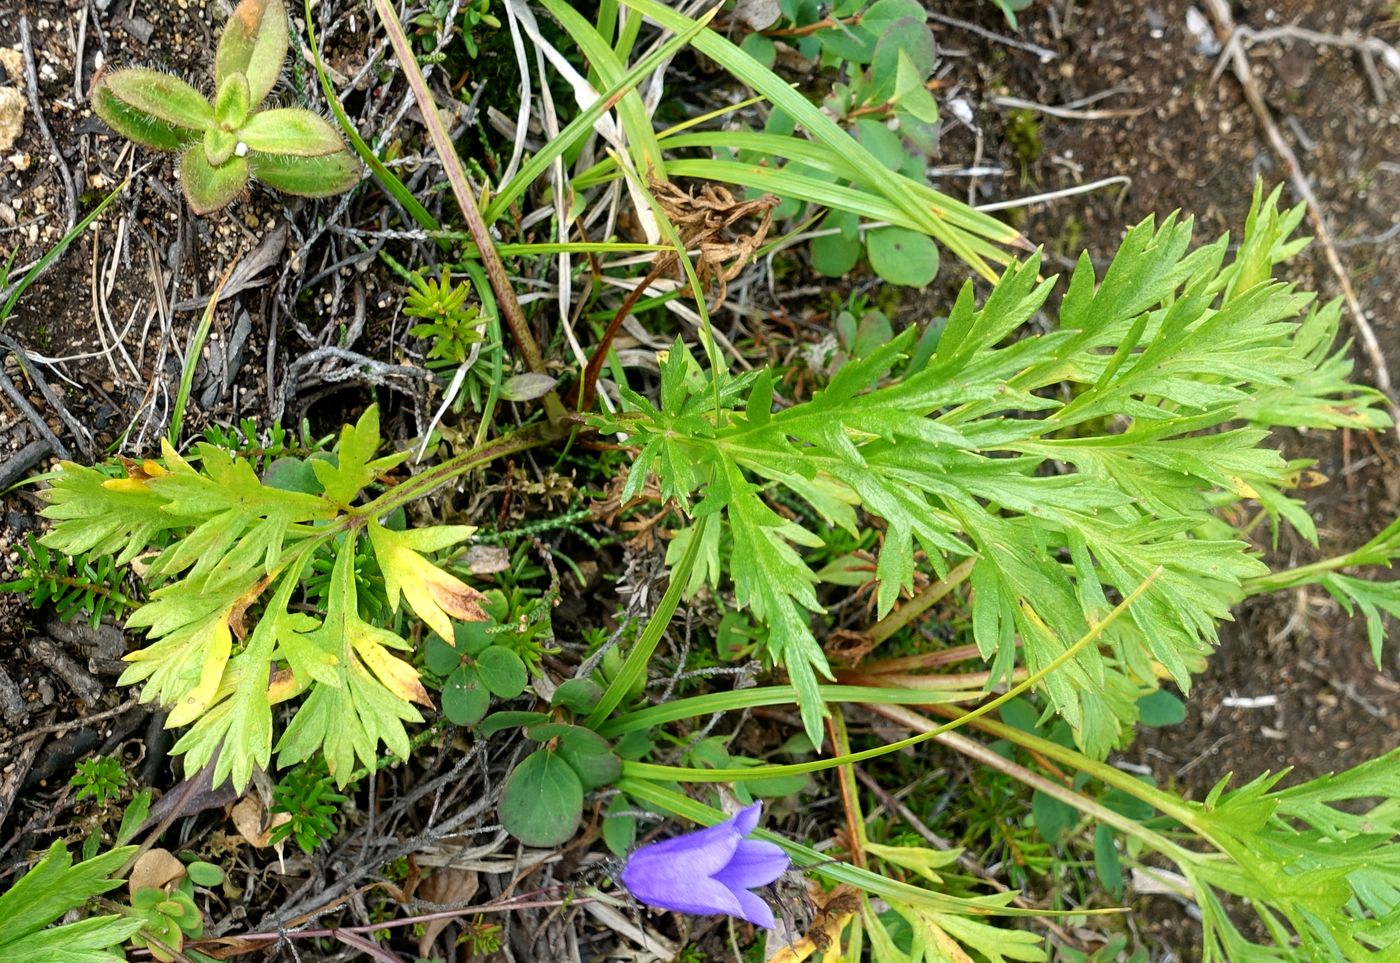 Image of Artemisia arctica specimen.